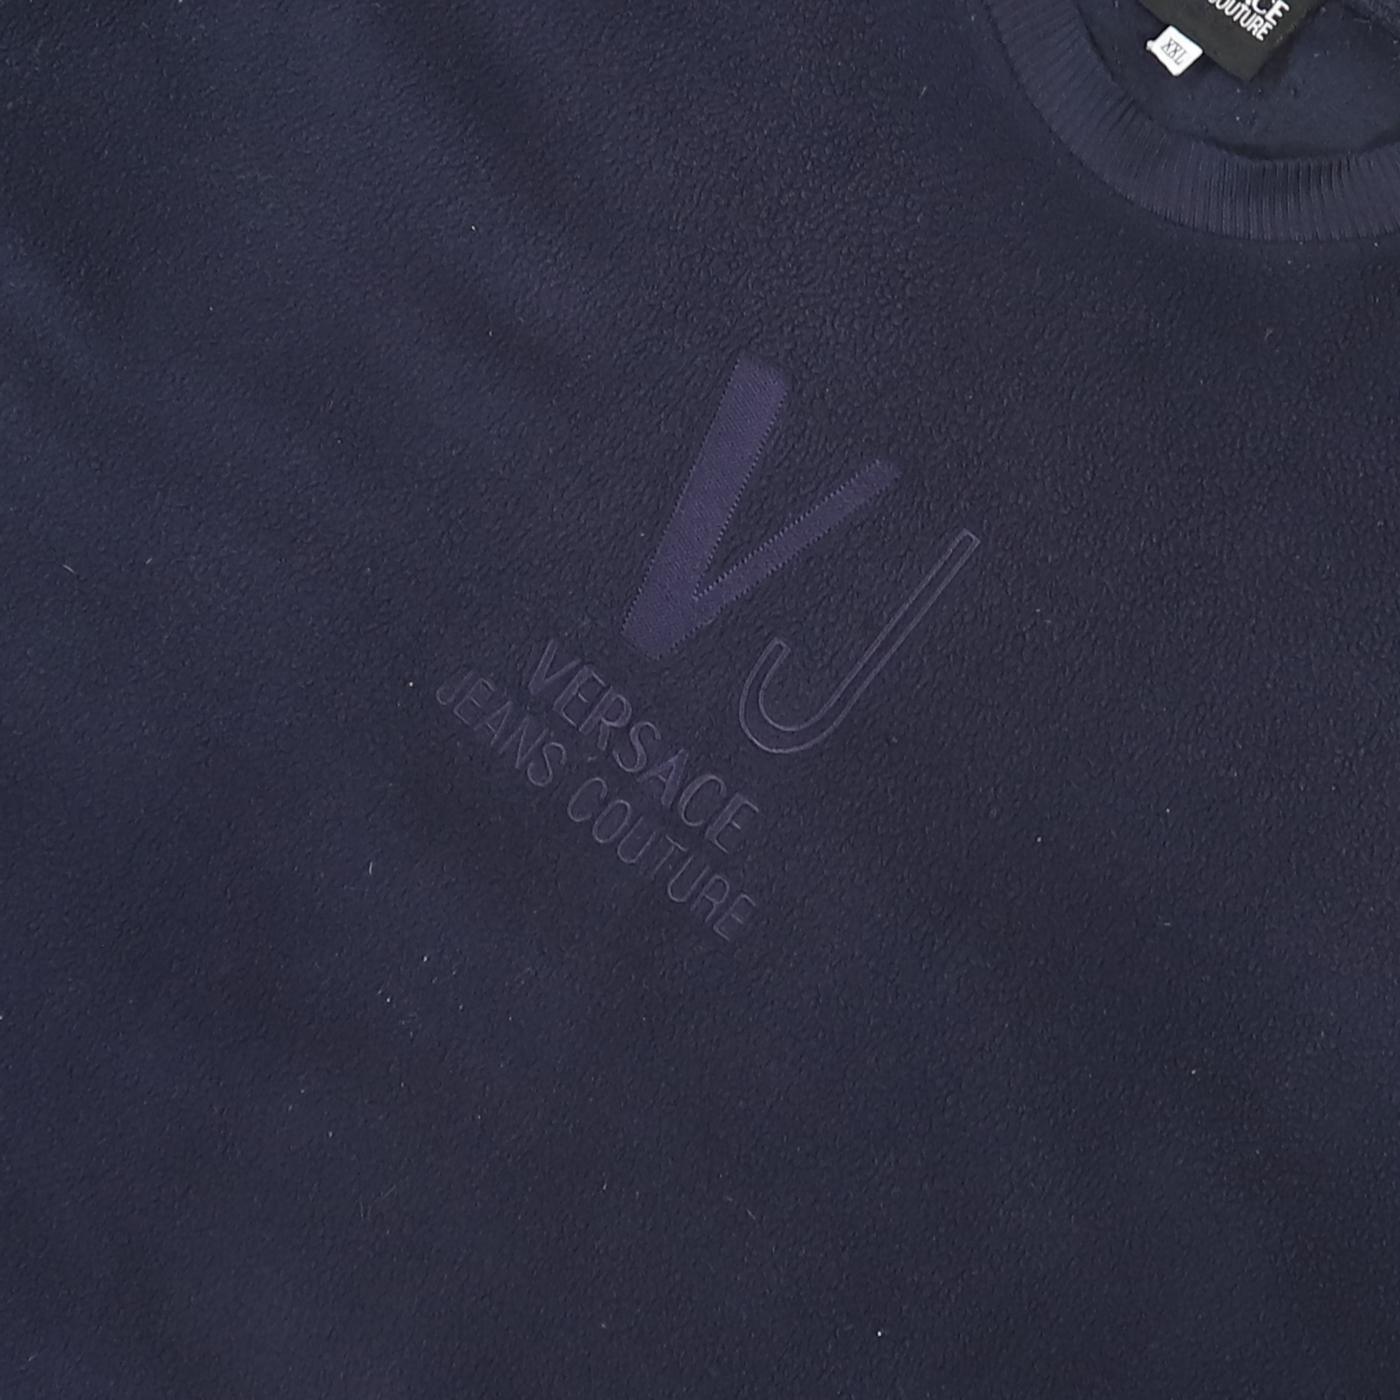 Versace Vintage Sweatshirt - XL - Known Source